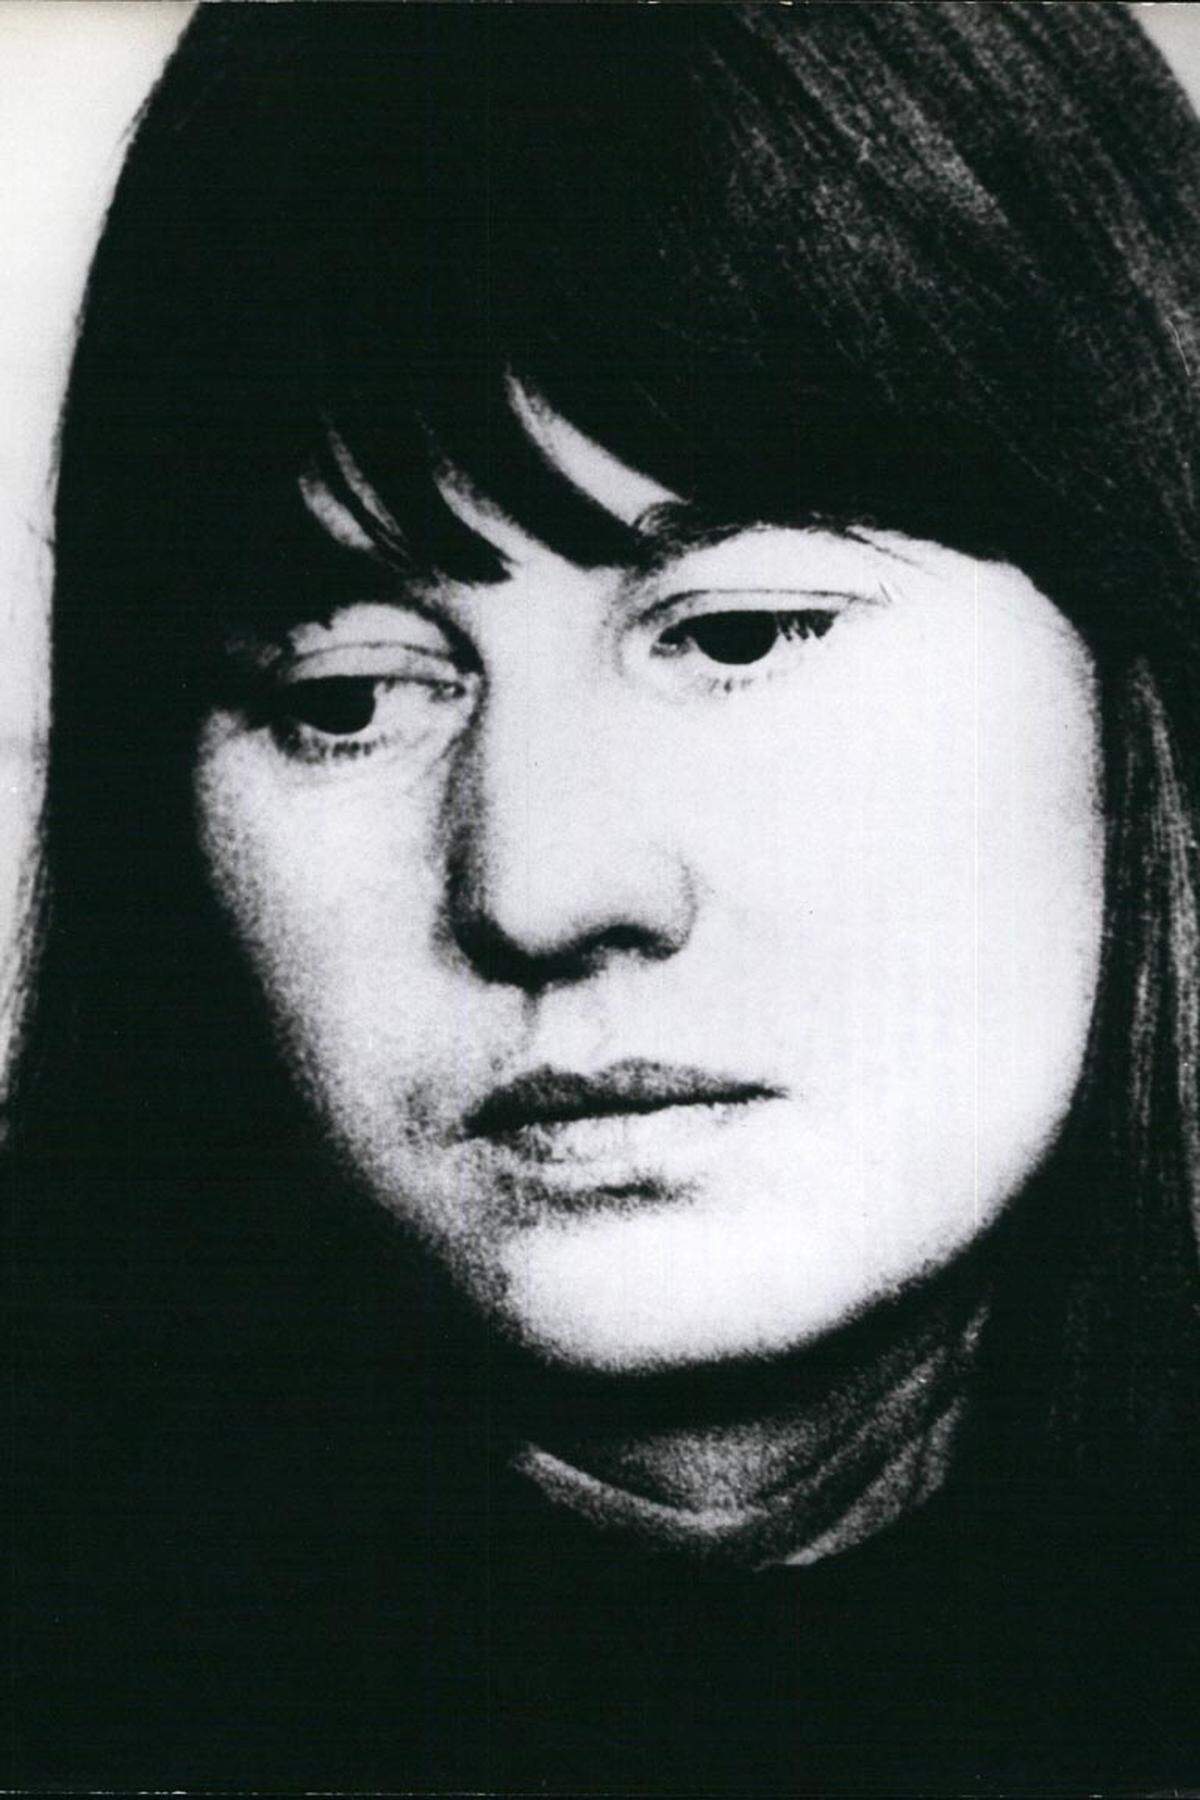 Am 9. Mai 1976 wird Ulrike Meinhof tot in ihrer Zelle aufgefunden. Die offizielle Obduktion stellt keinen Anhaltspunkt für Fremdeinwirkung fest. Eine zweite, angestrebt von Meinhofs Schwester Wienke, kommt bald darauf zu demselben Ergebnis.